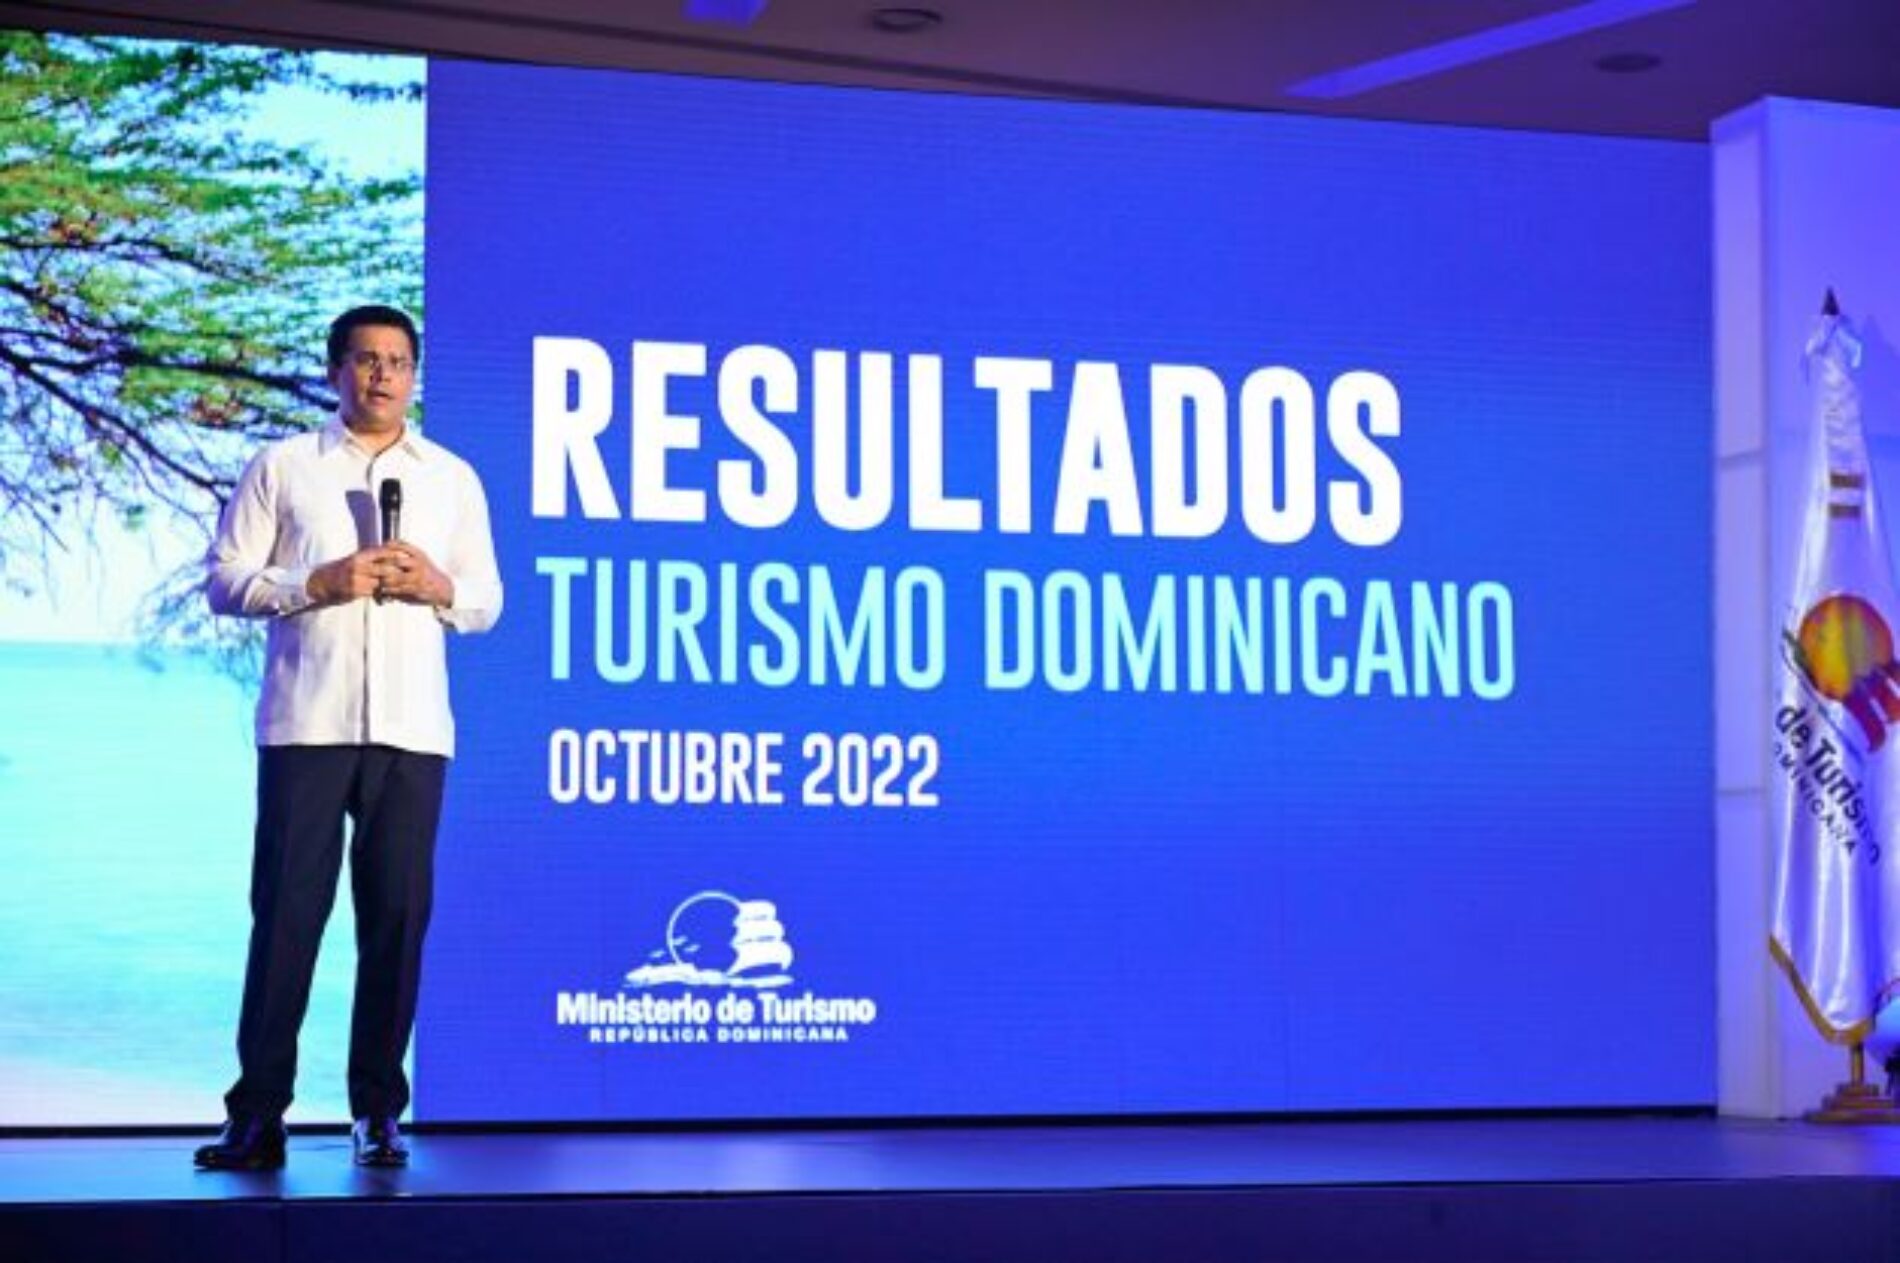 Los colombianos, en el TOP 3 de los turistas que más visitan República Dominicana en 2022